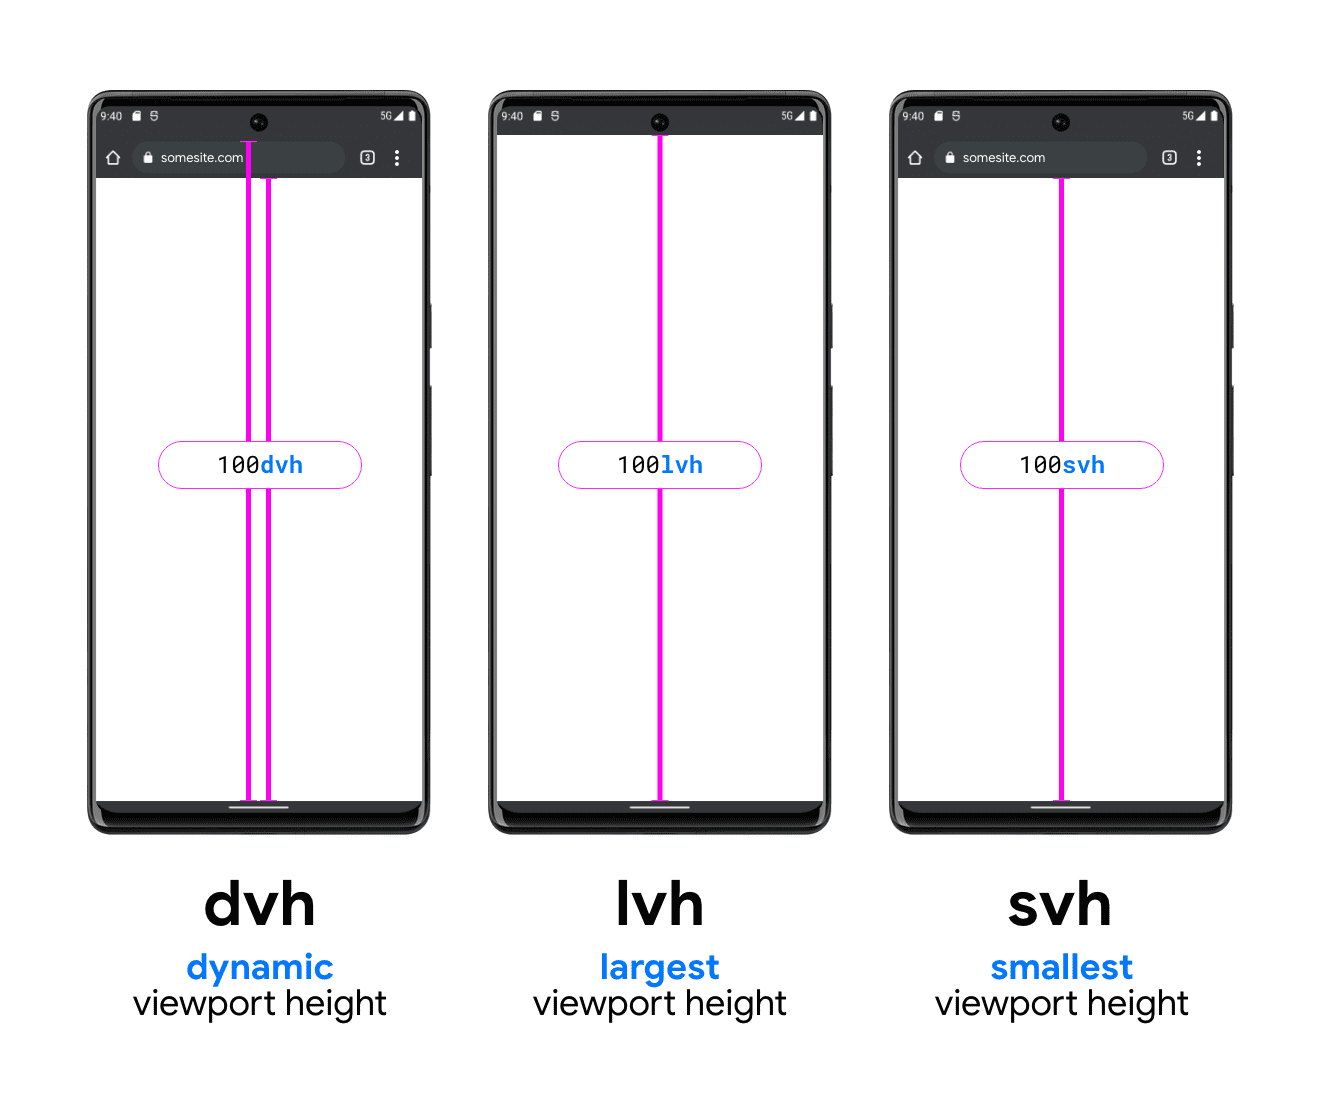 DVH, LVH ve SVH resimlerini oluşturmaya yardımcı olmak için üç telefonun yer aldığı bir grafik. DVH örnek telefonda, biri arama çubuğunun alt kısmıyla görüntü alanının alt kısmı arasında, diğeri de arama çubuğunun üzerinde (sistem durum çubuğunun altında) ve görüntü alanının alt kısmında olmak üzere iki dikey çizgi bulunur. DVH&#39;nin bu iki uzunluktan birinde nasıl olabileceğini gösterir. LVH, cihaz durum çubuğunun alt kısmı ile telefon görüntü alanının düğmesi arasında tek çizgi olacak şekilde ortada gösterilir. Sonuncusu, tarayıcı arama çubuğunun altından görüntü alanının altına doğru bir çizgi gösteren SVH birimi örneğidir.